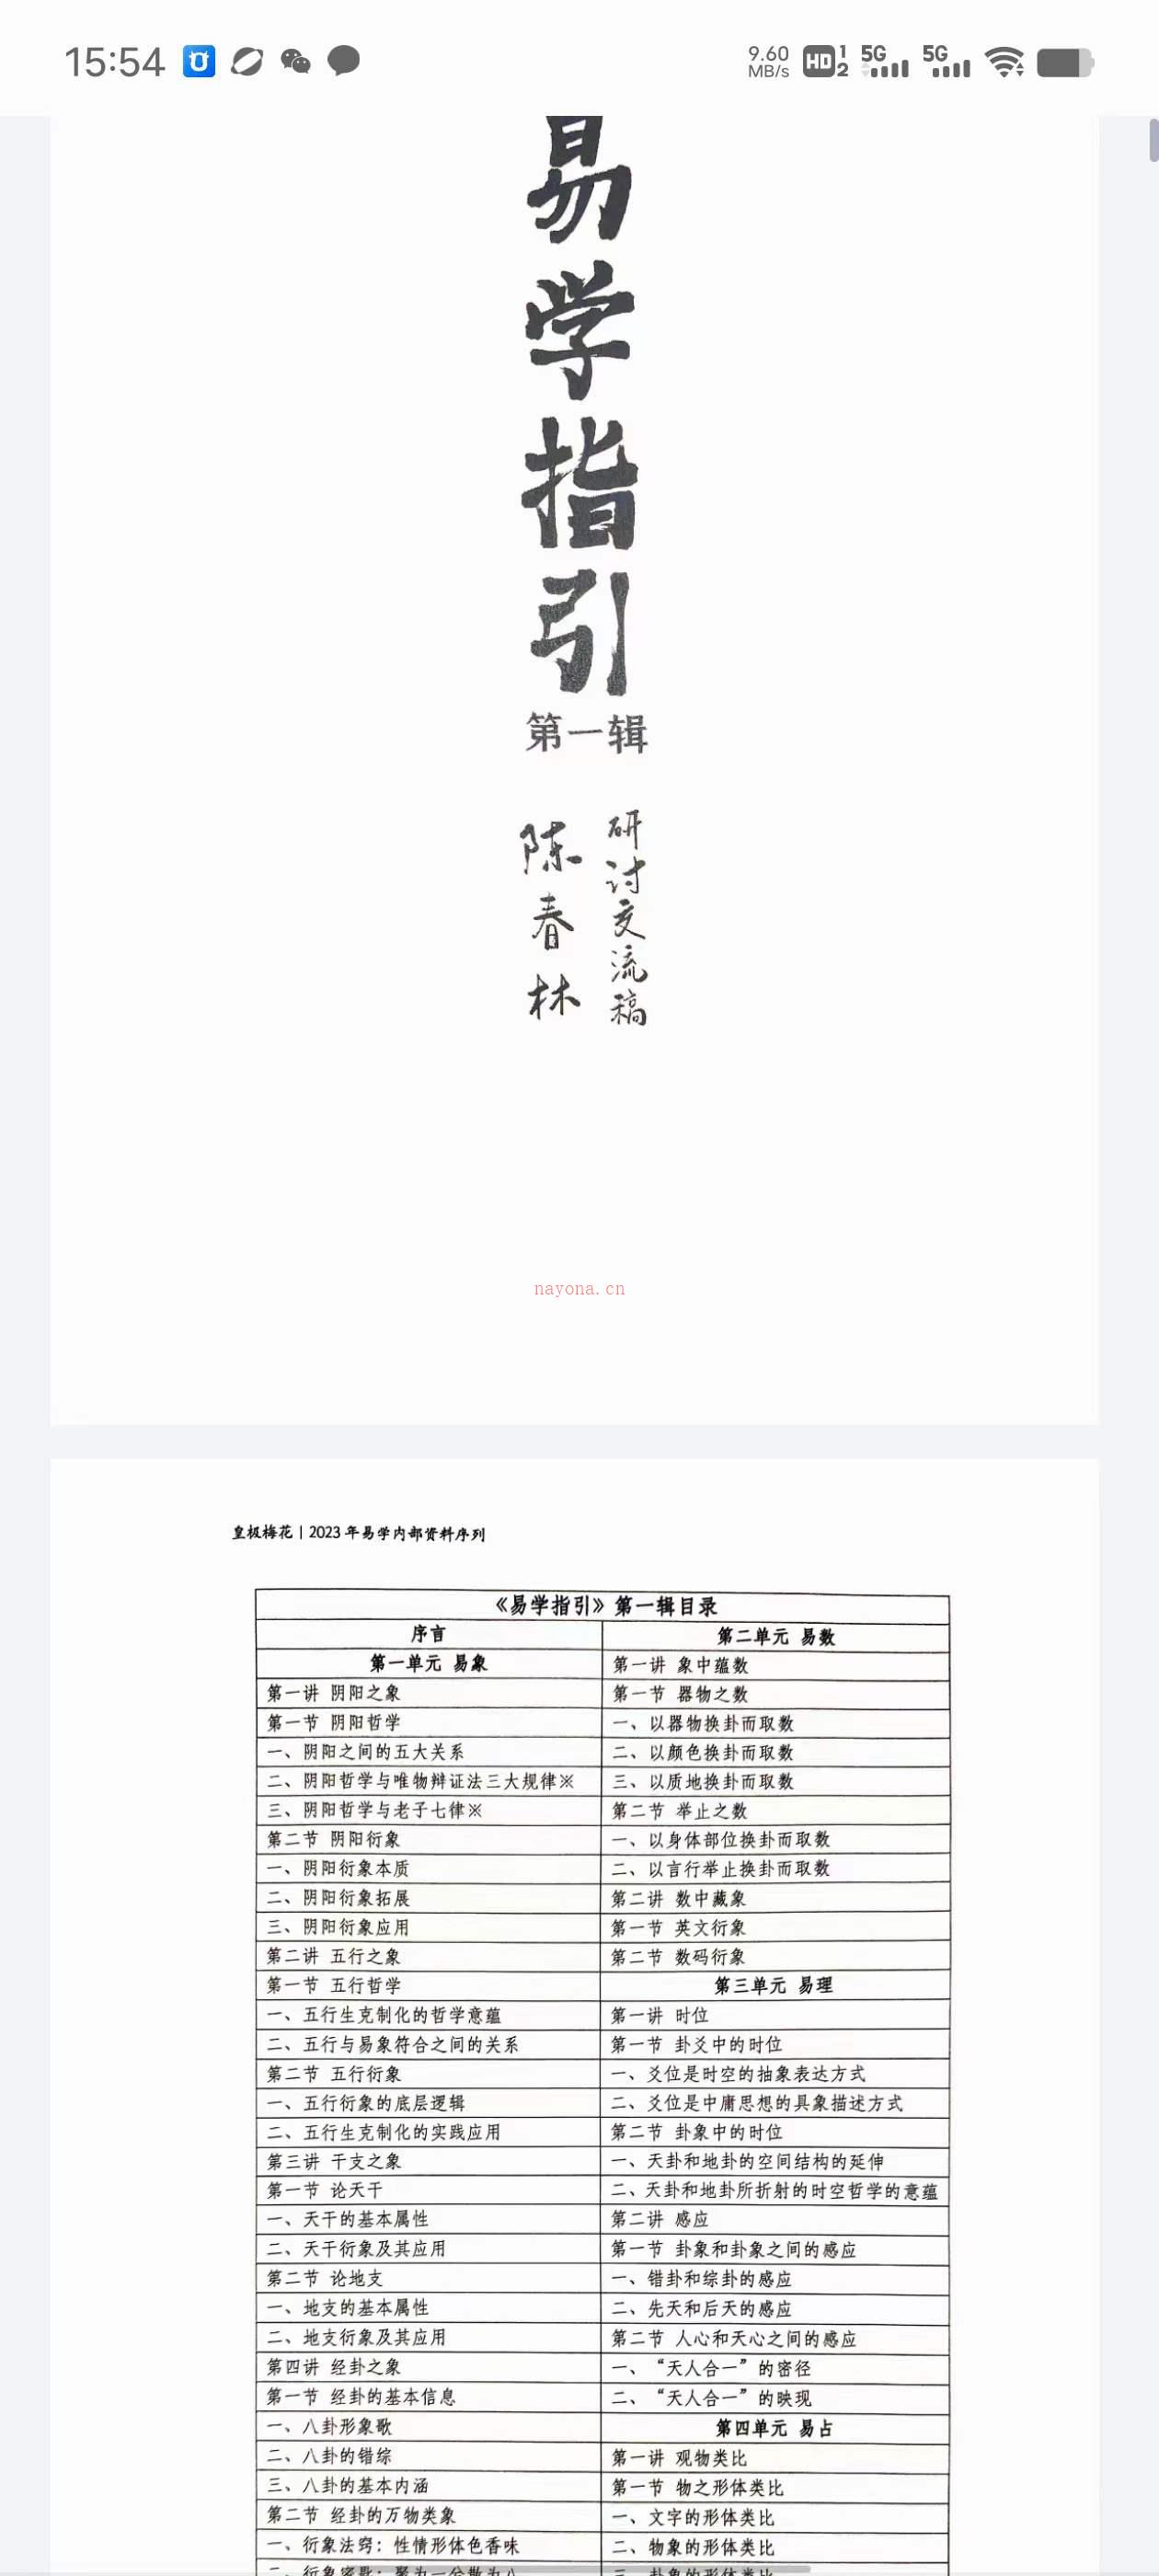 陈春林《易学指引》全程录像25集+电子书